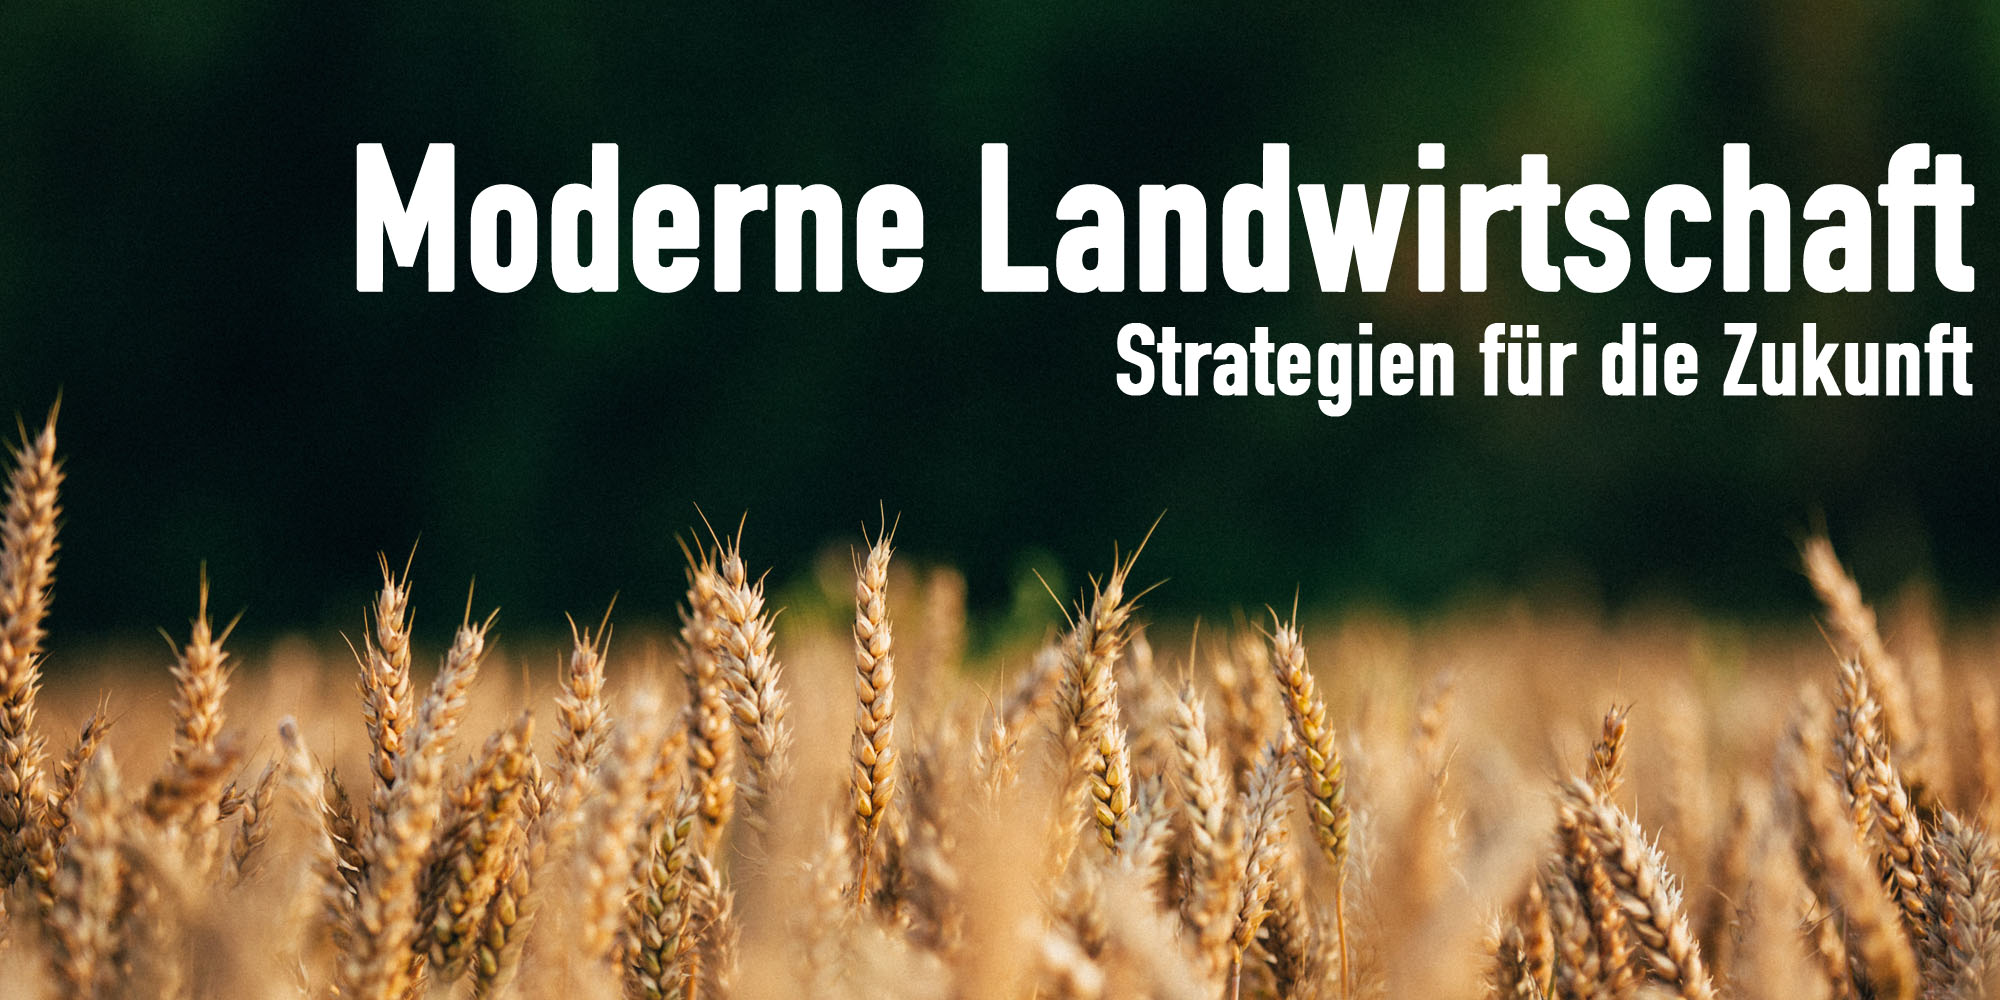 Moderne Landwirtschaft - Strategien für die Zukunft, Teil 1